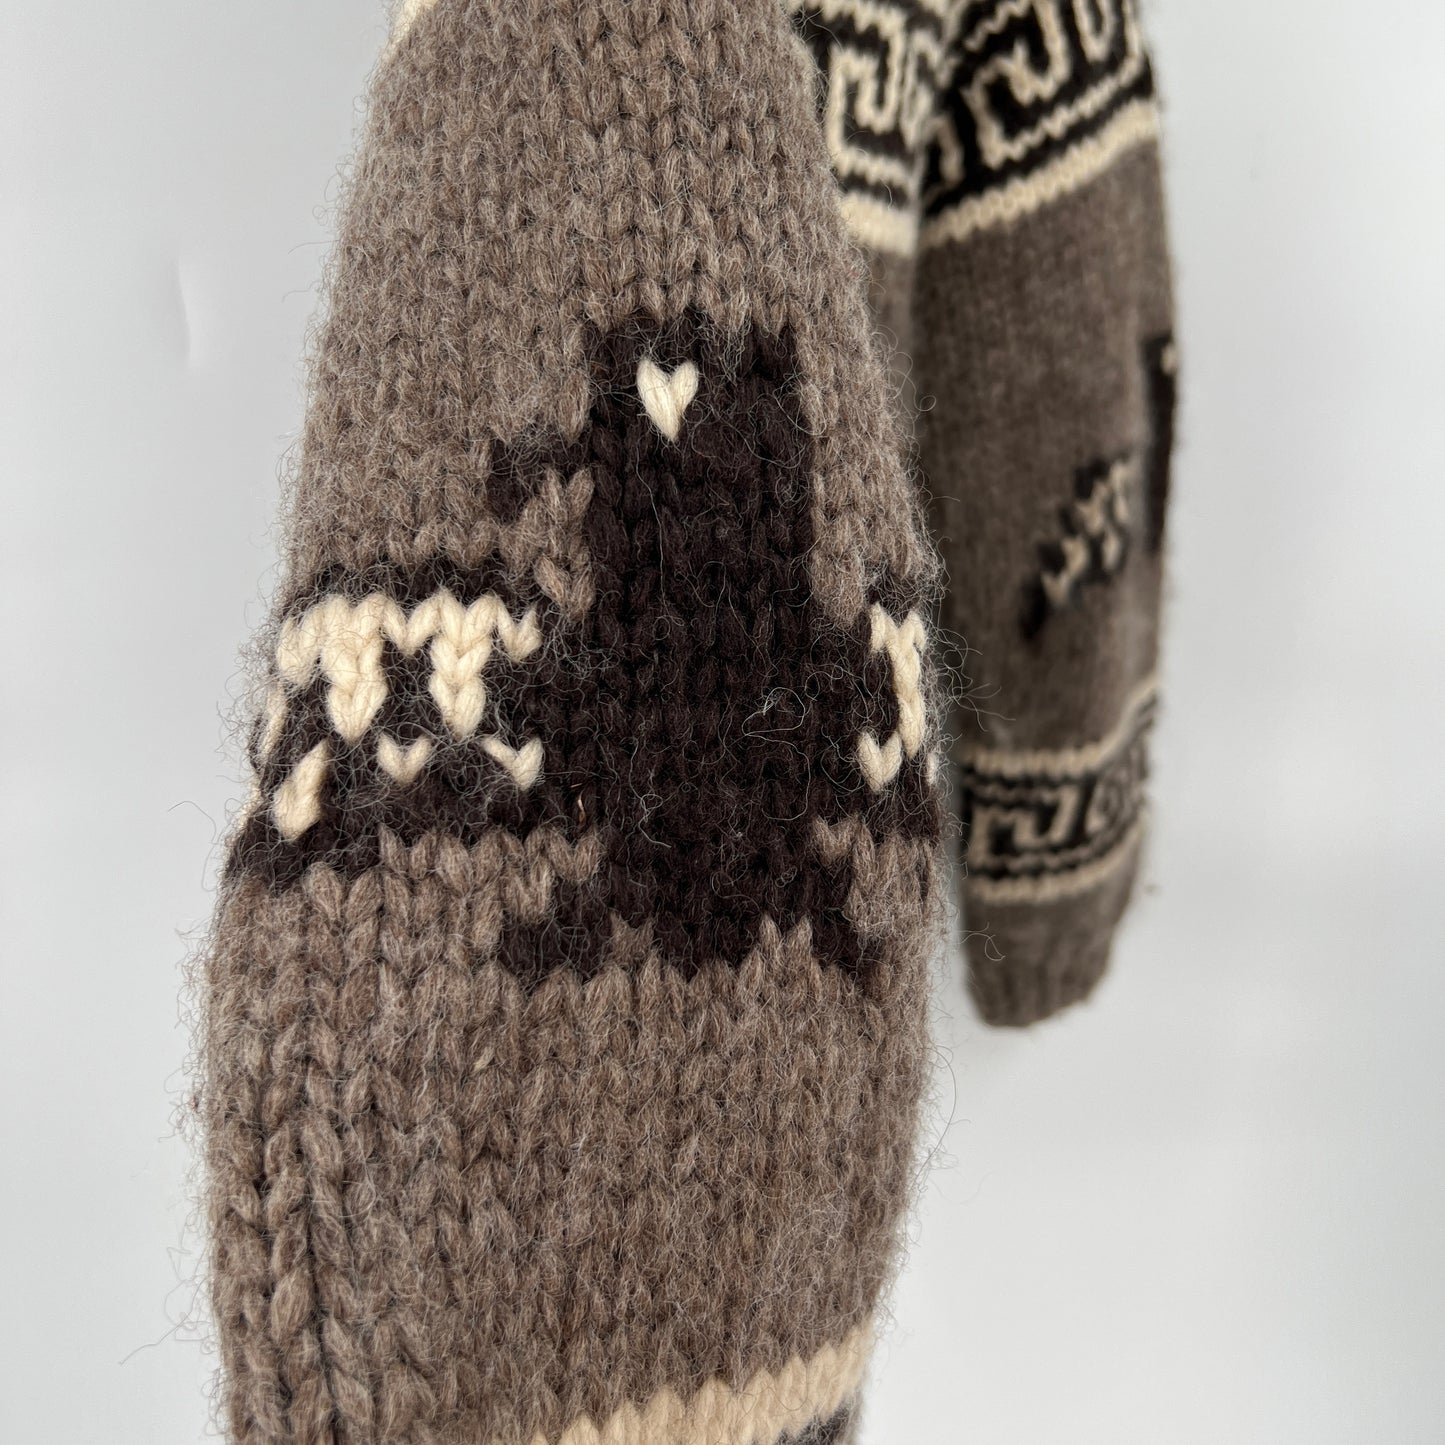 SOLD. Vintage Tuak Handknit Cowichan Wool Sweater